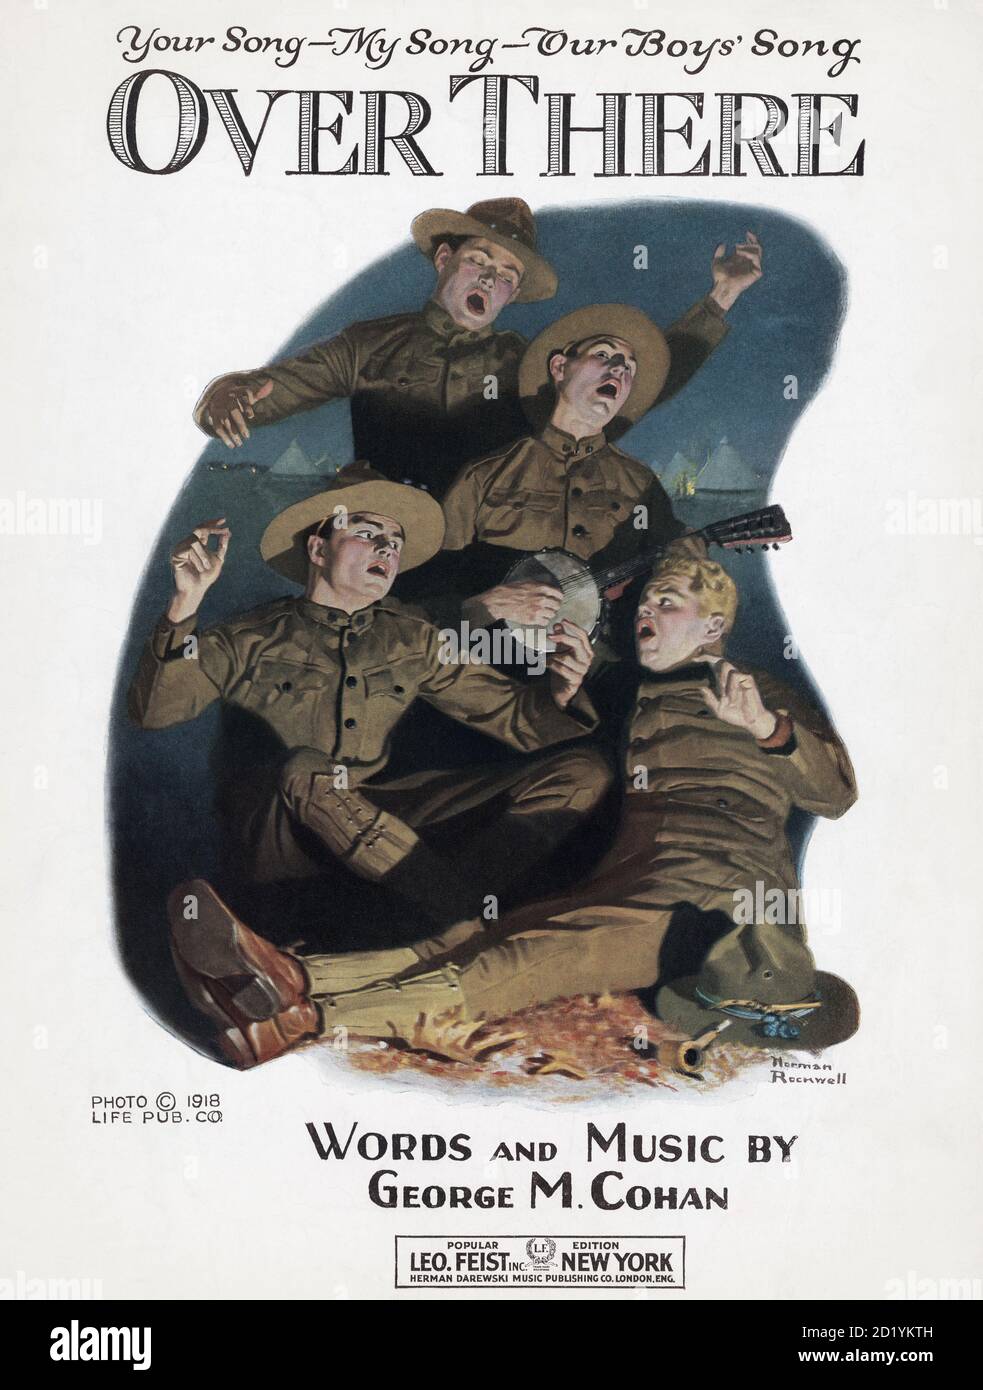 Copertina di 1918 spartiti edizione del popolare patriottico della prima guerra mondiale canzone là sopra, parole e musica di George M. Cohan. Foto Stock